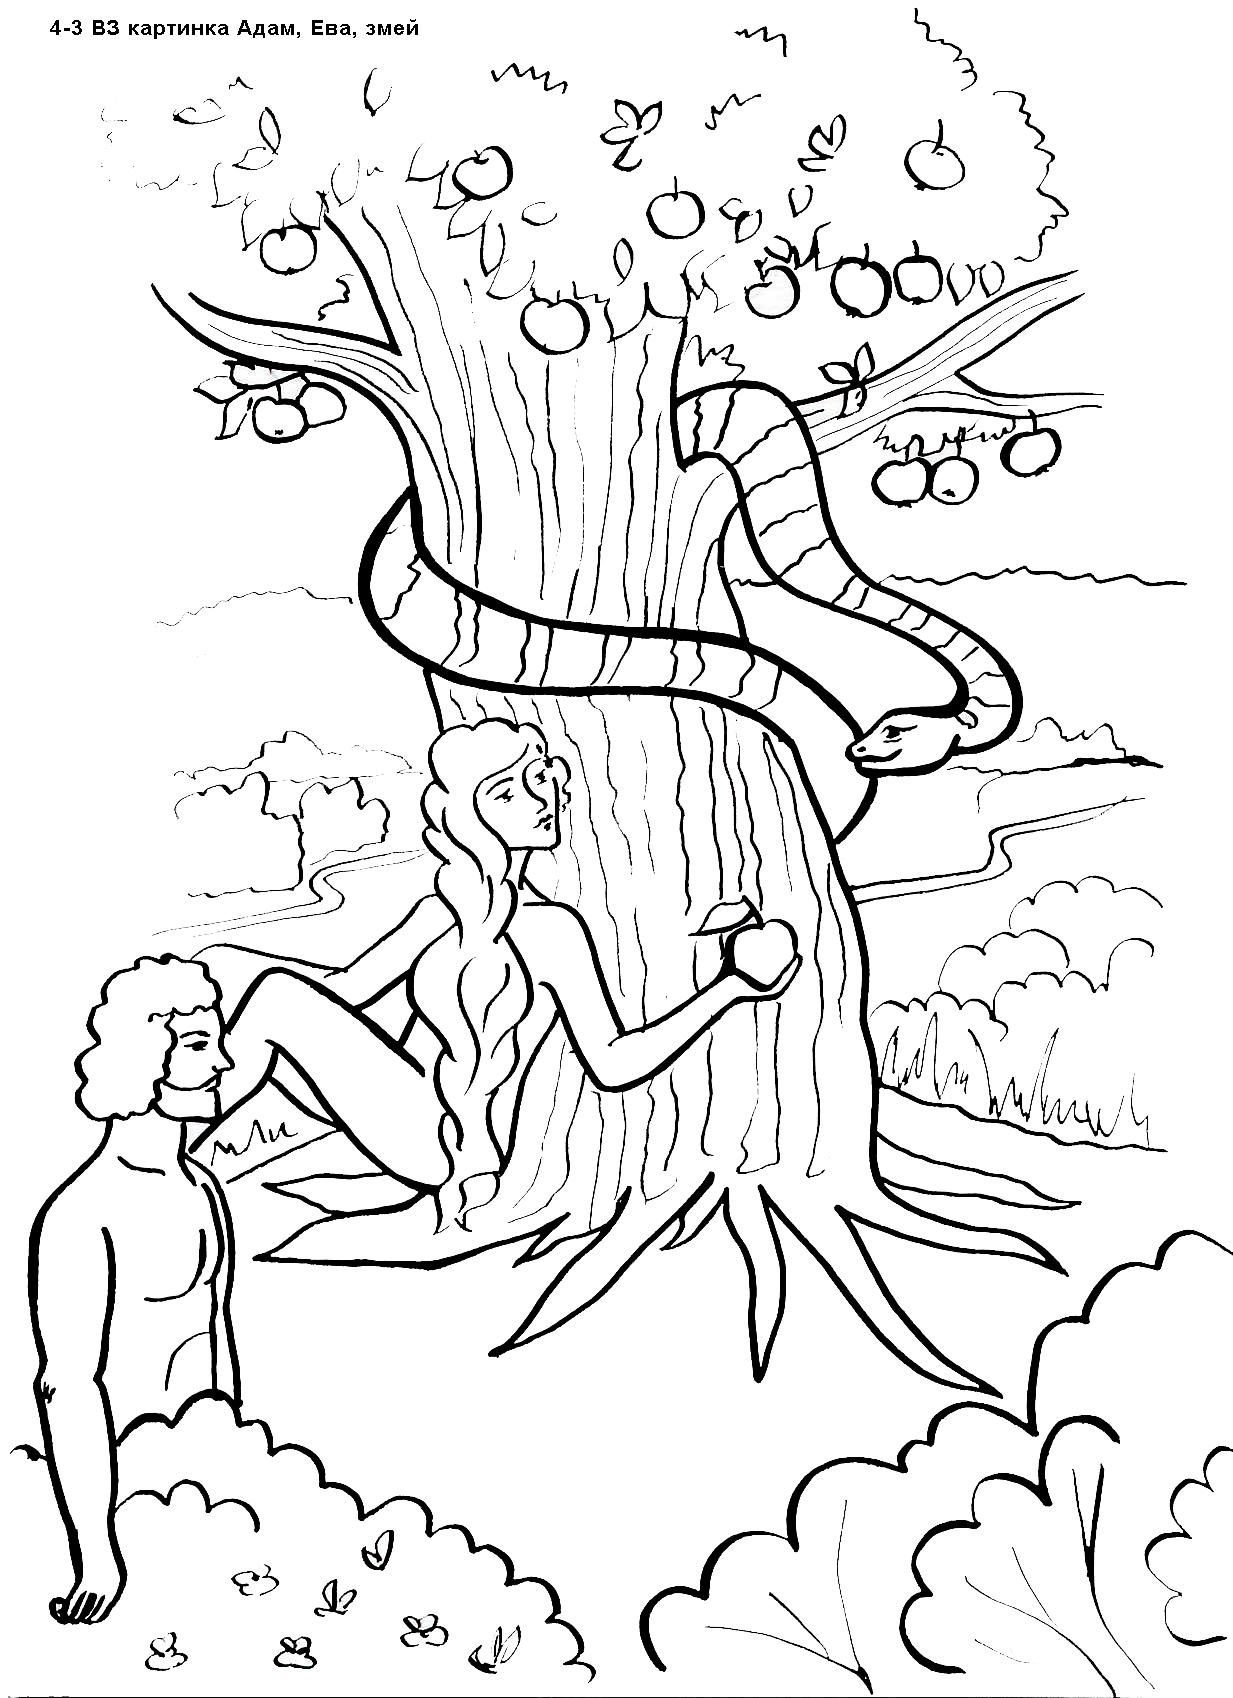 Древо Адама и Евы